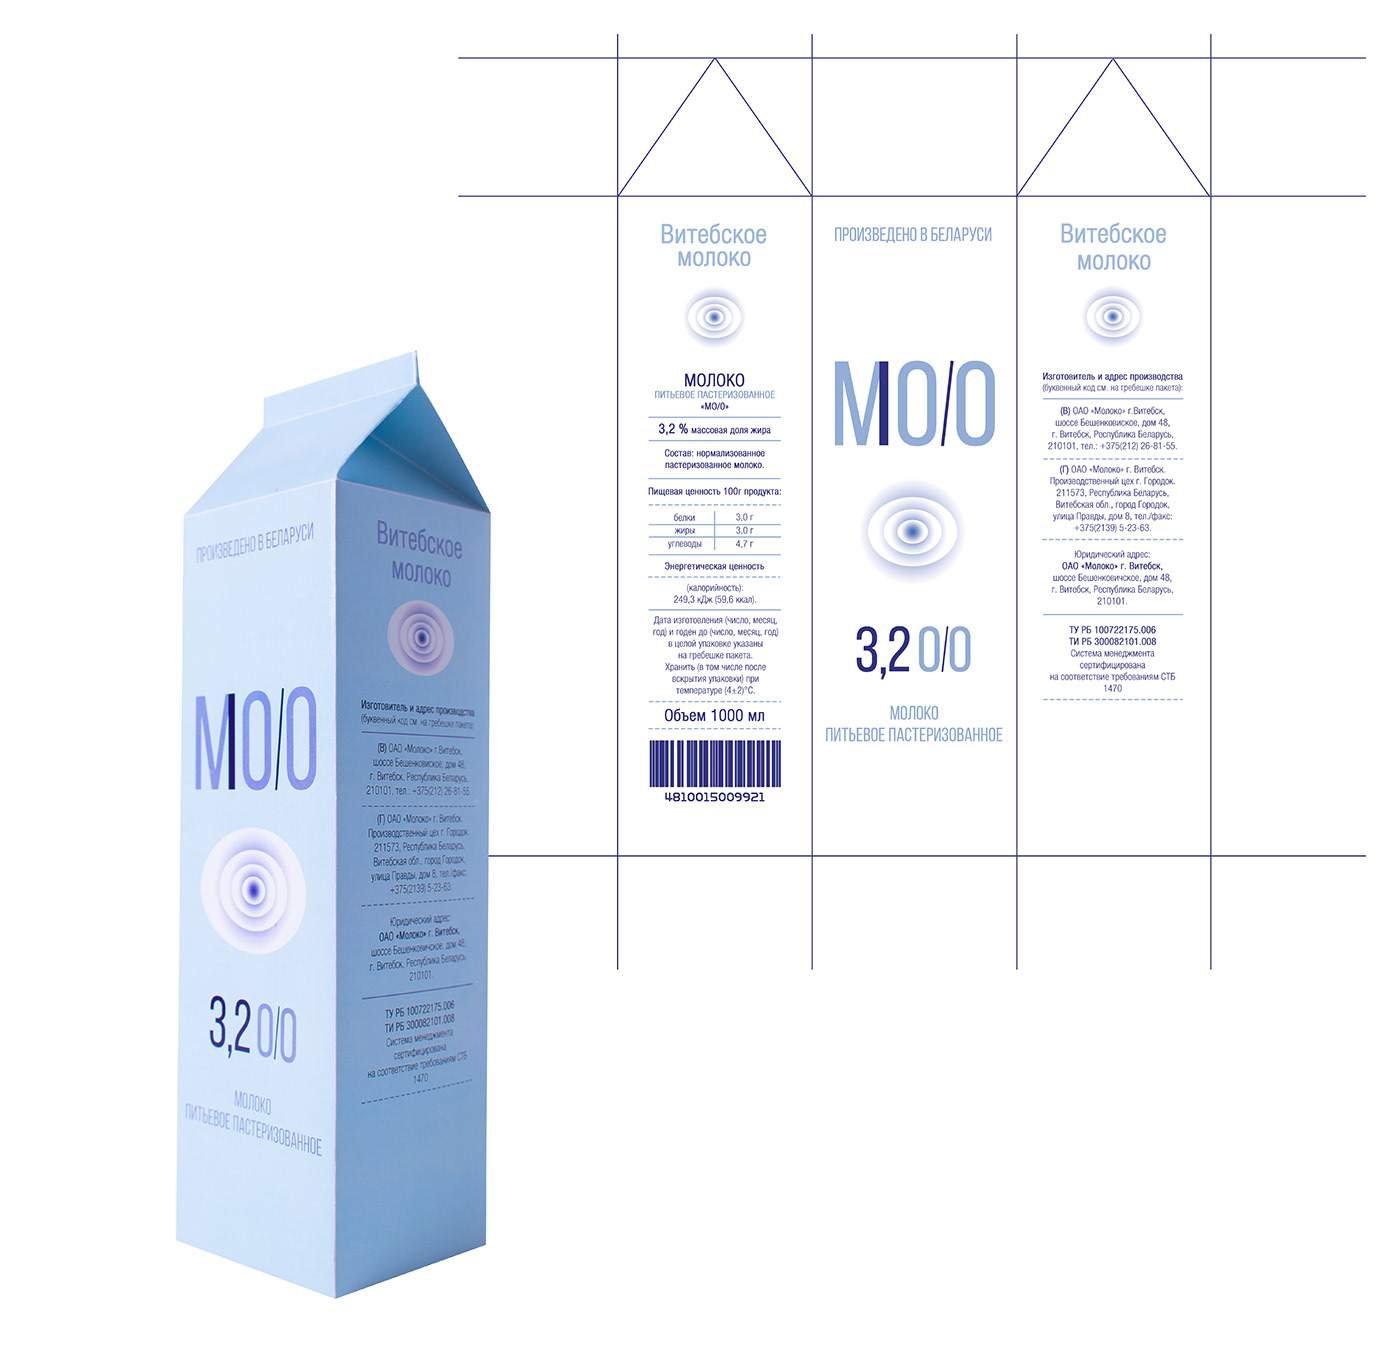 极简风格的MOO乳品包装设计